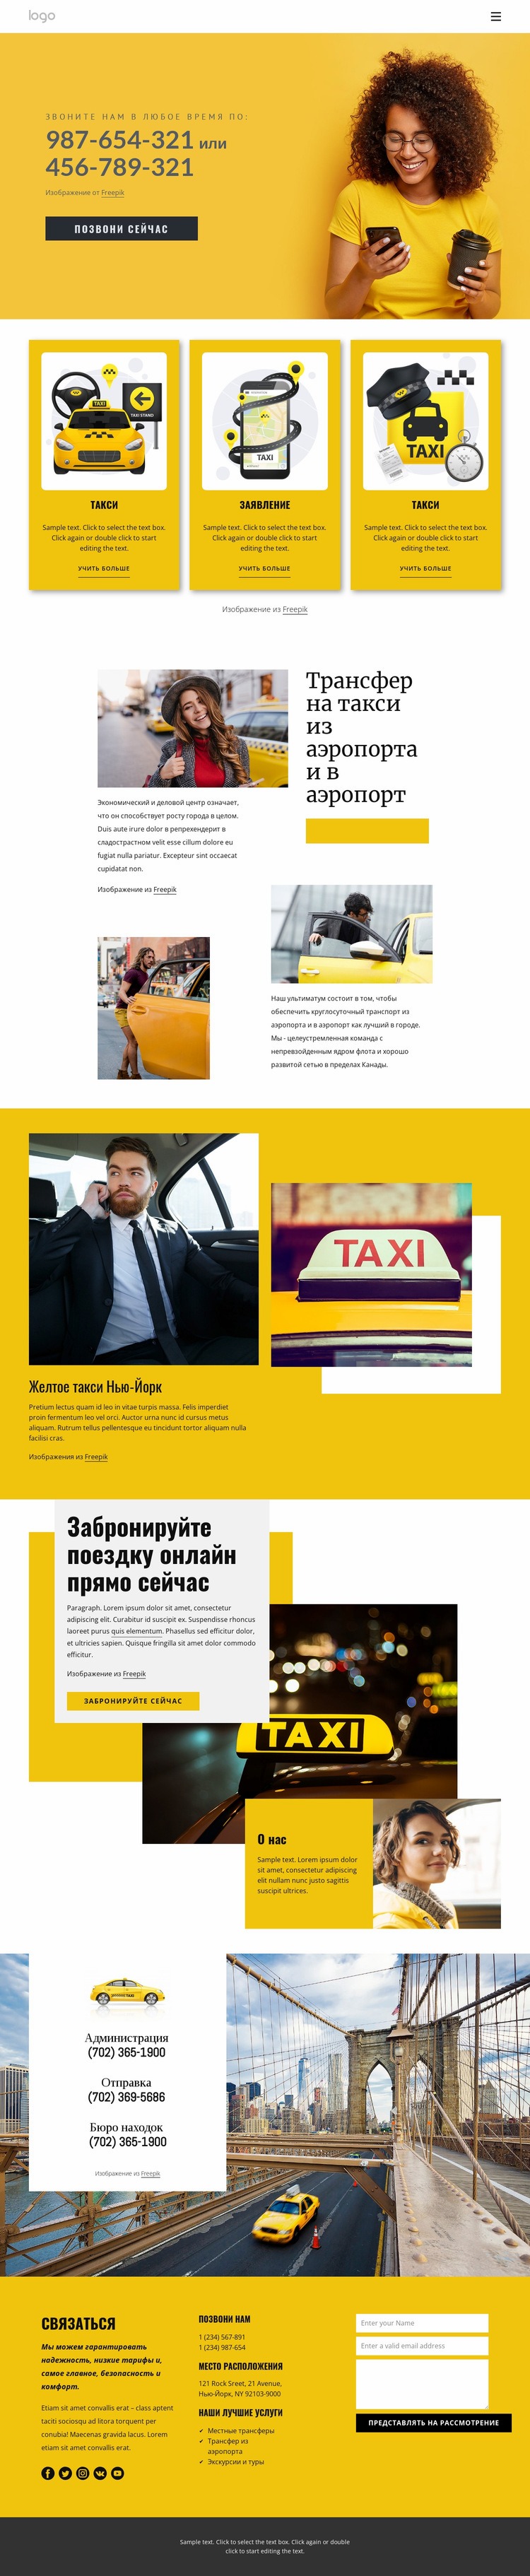 Качественное такси Дизайн сайта